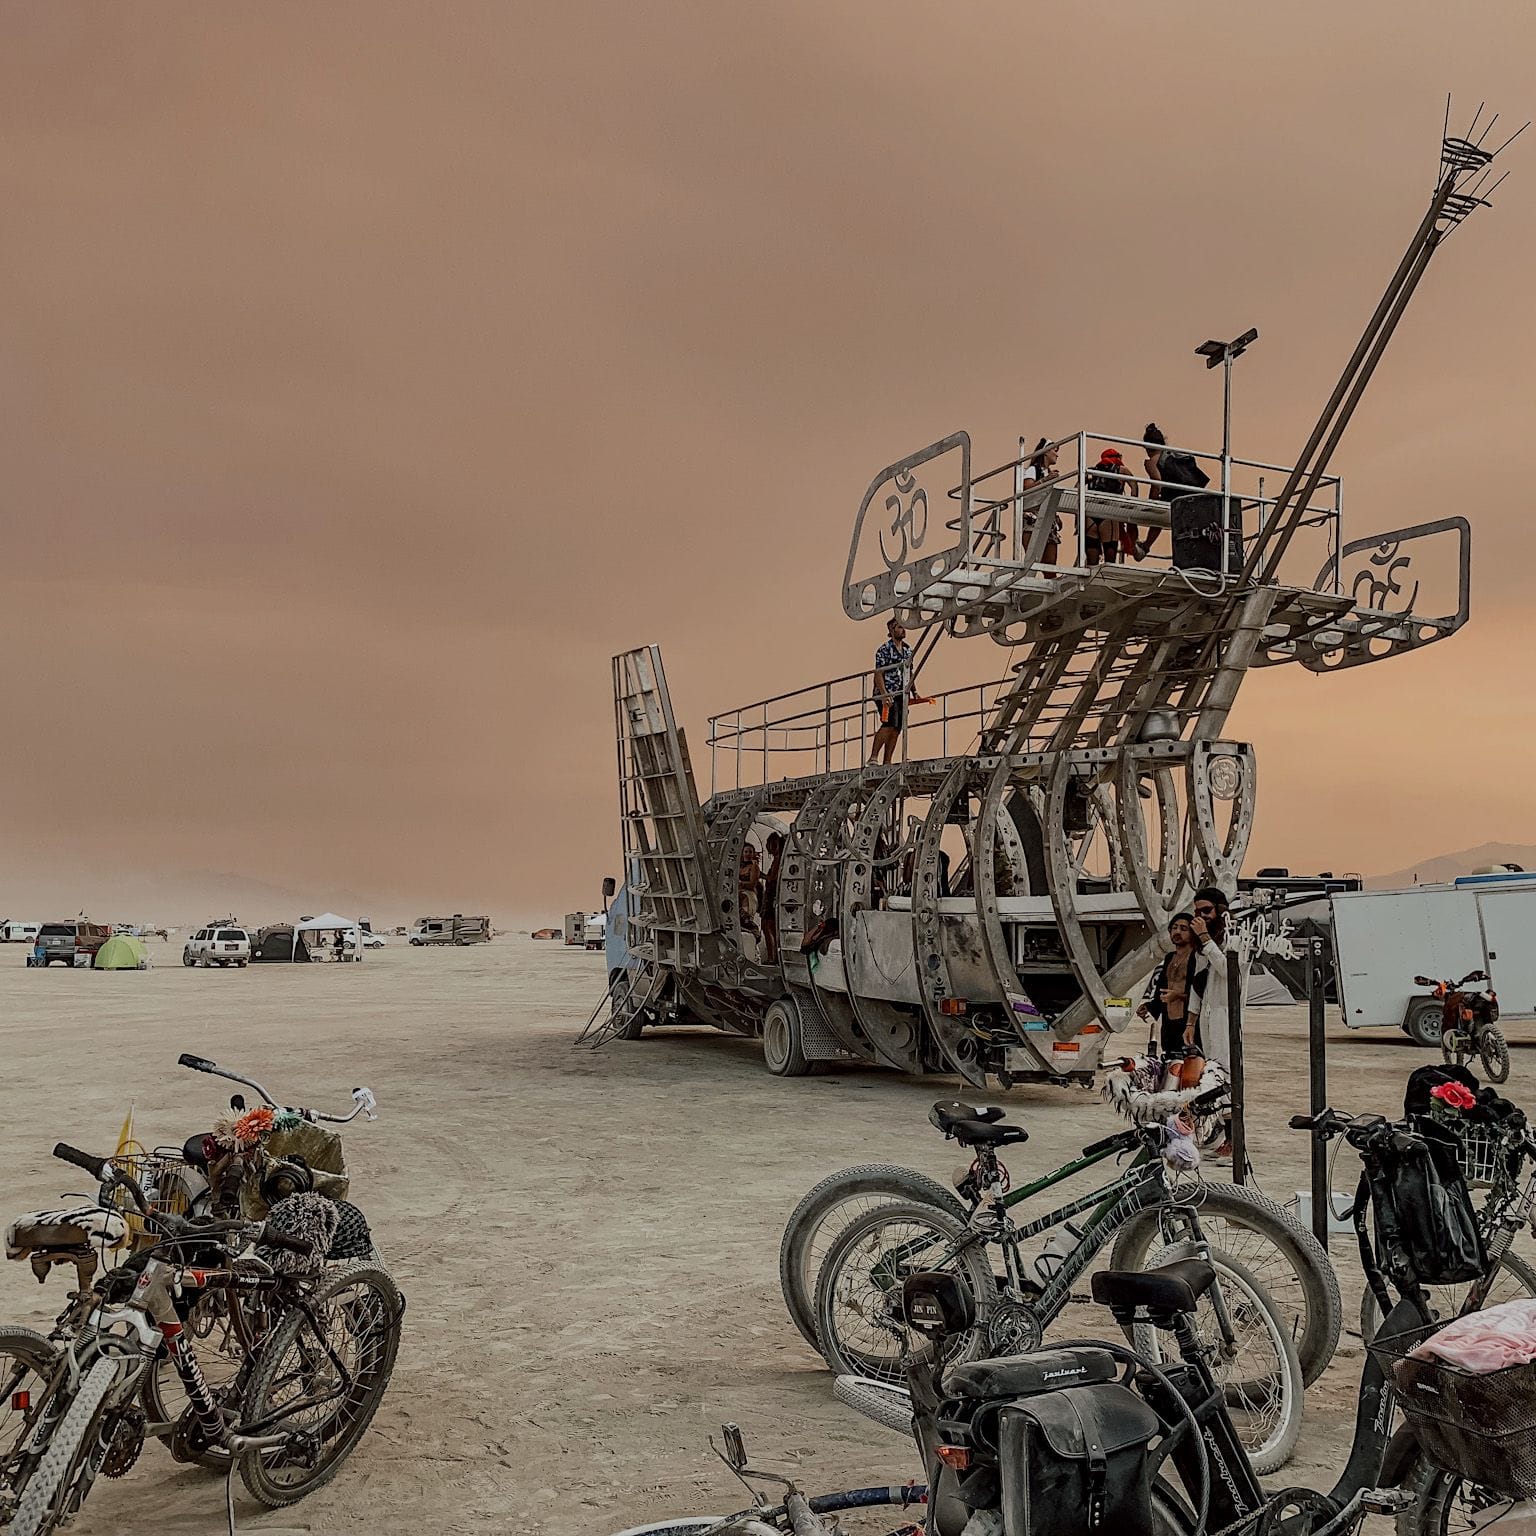 Как прошёл отменённый Burning Man 2021. Репортаж из пустыни Блэк-Рок в Неваде